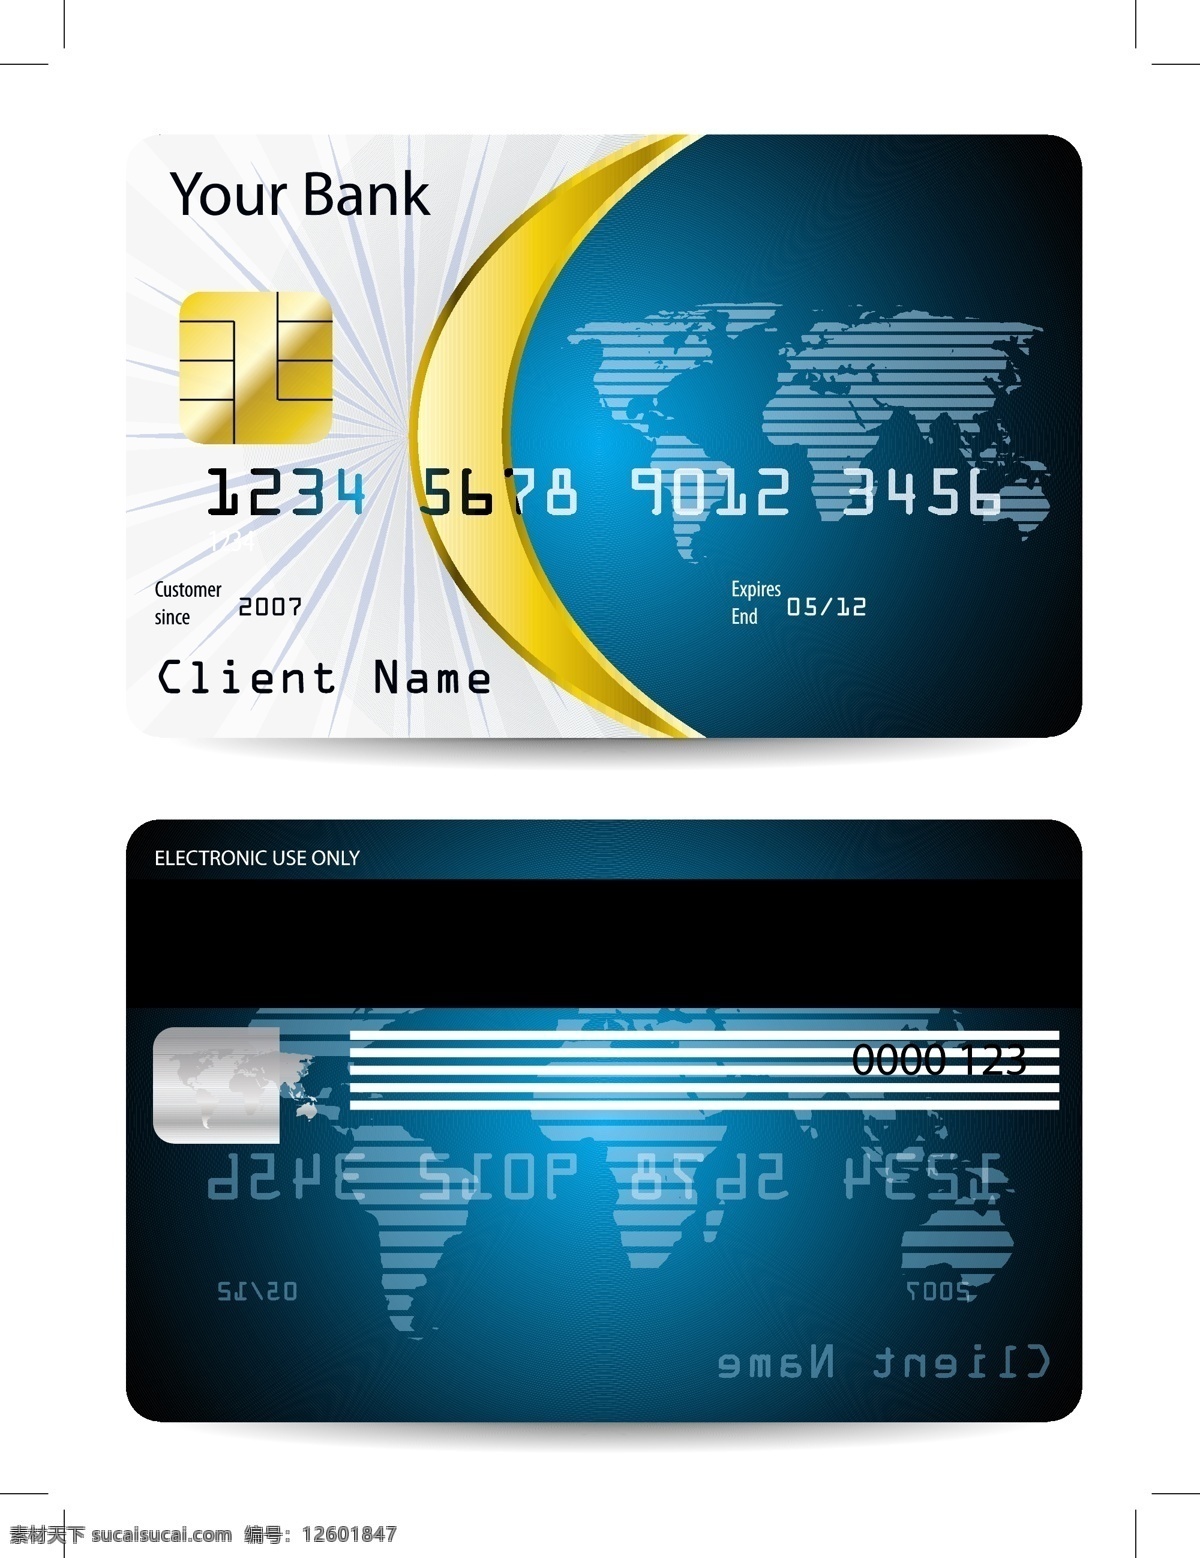 信用卡 信誉卡 银行卡 商务金融 卡片 贵宾卡 vip卡 磁卡 电话卡 商务 科技 名片 名片卡片 矢量